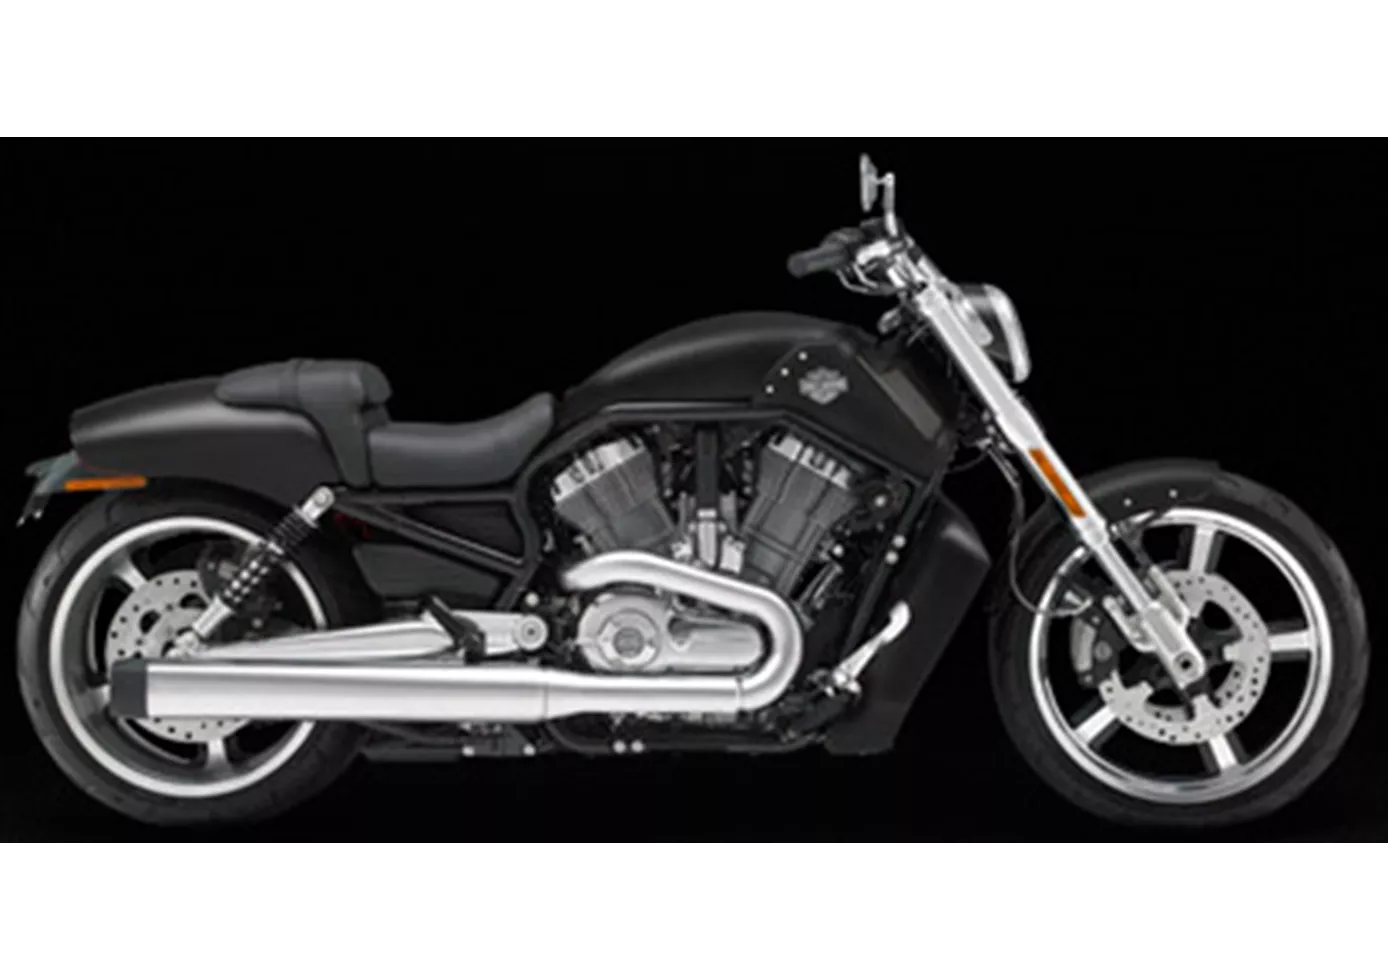 Harley-Davidson V-Rod Muscle VRSCF 2012